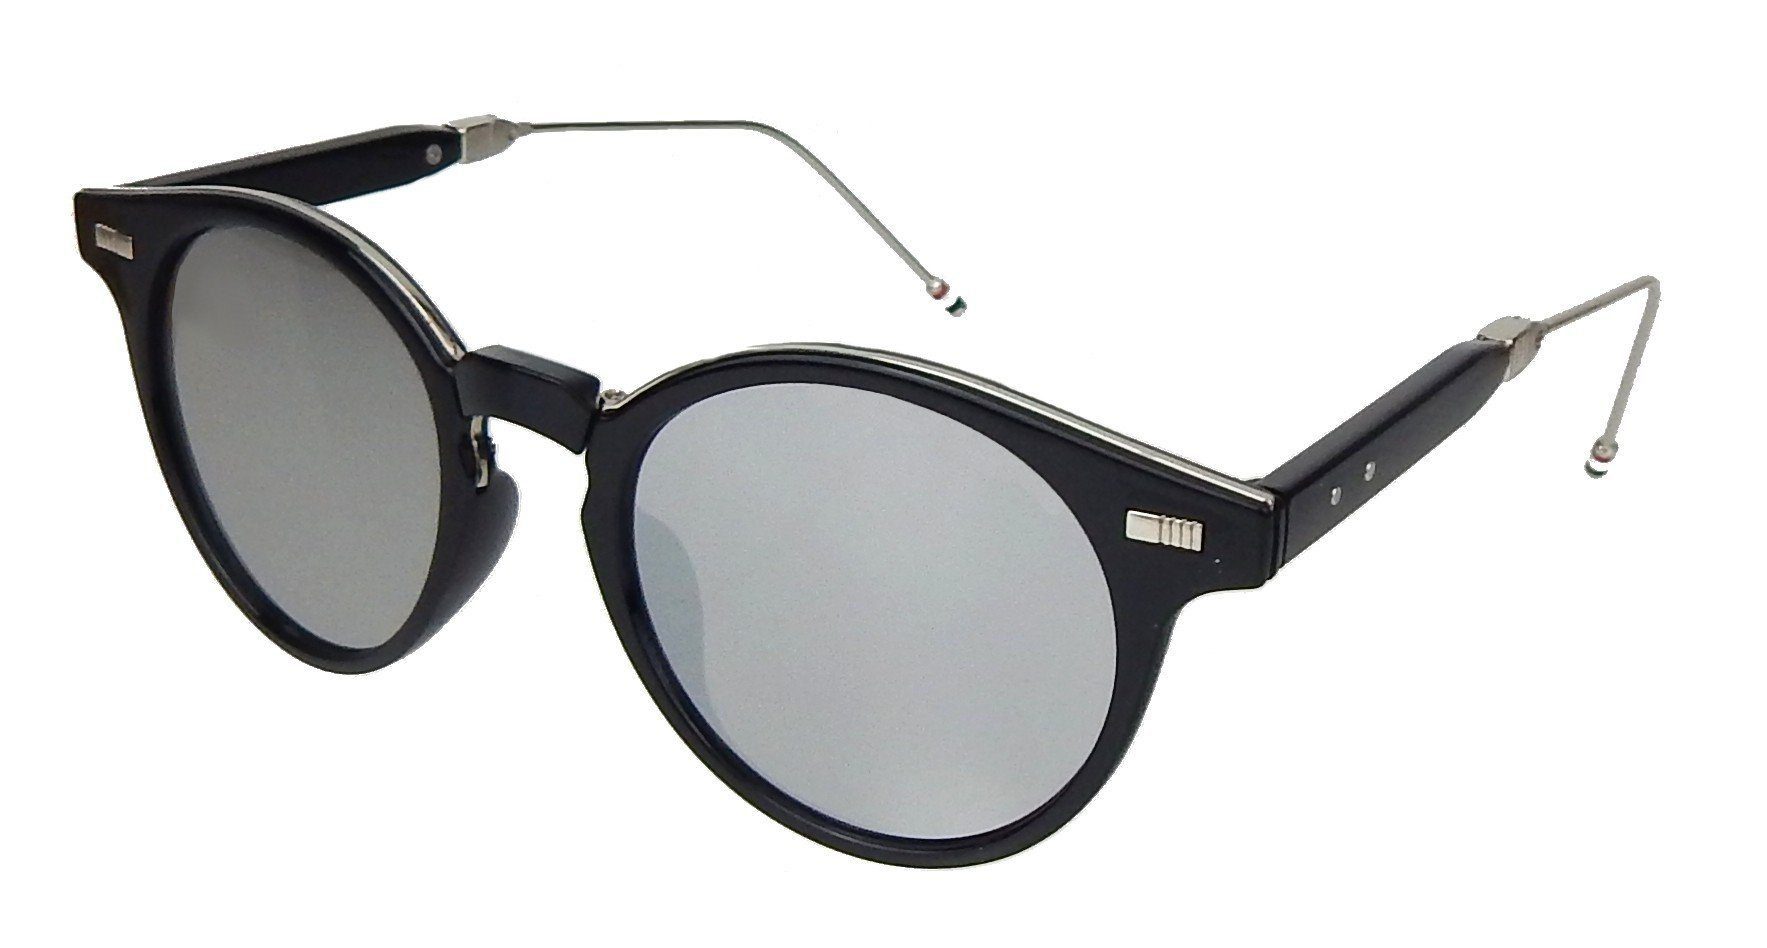 Ella Jonte Sonnenbrille schwarz silber UV 400 new style